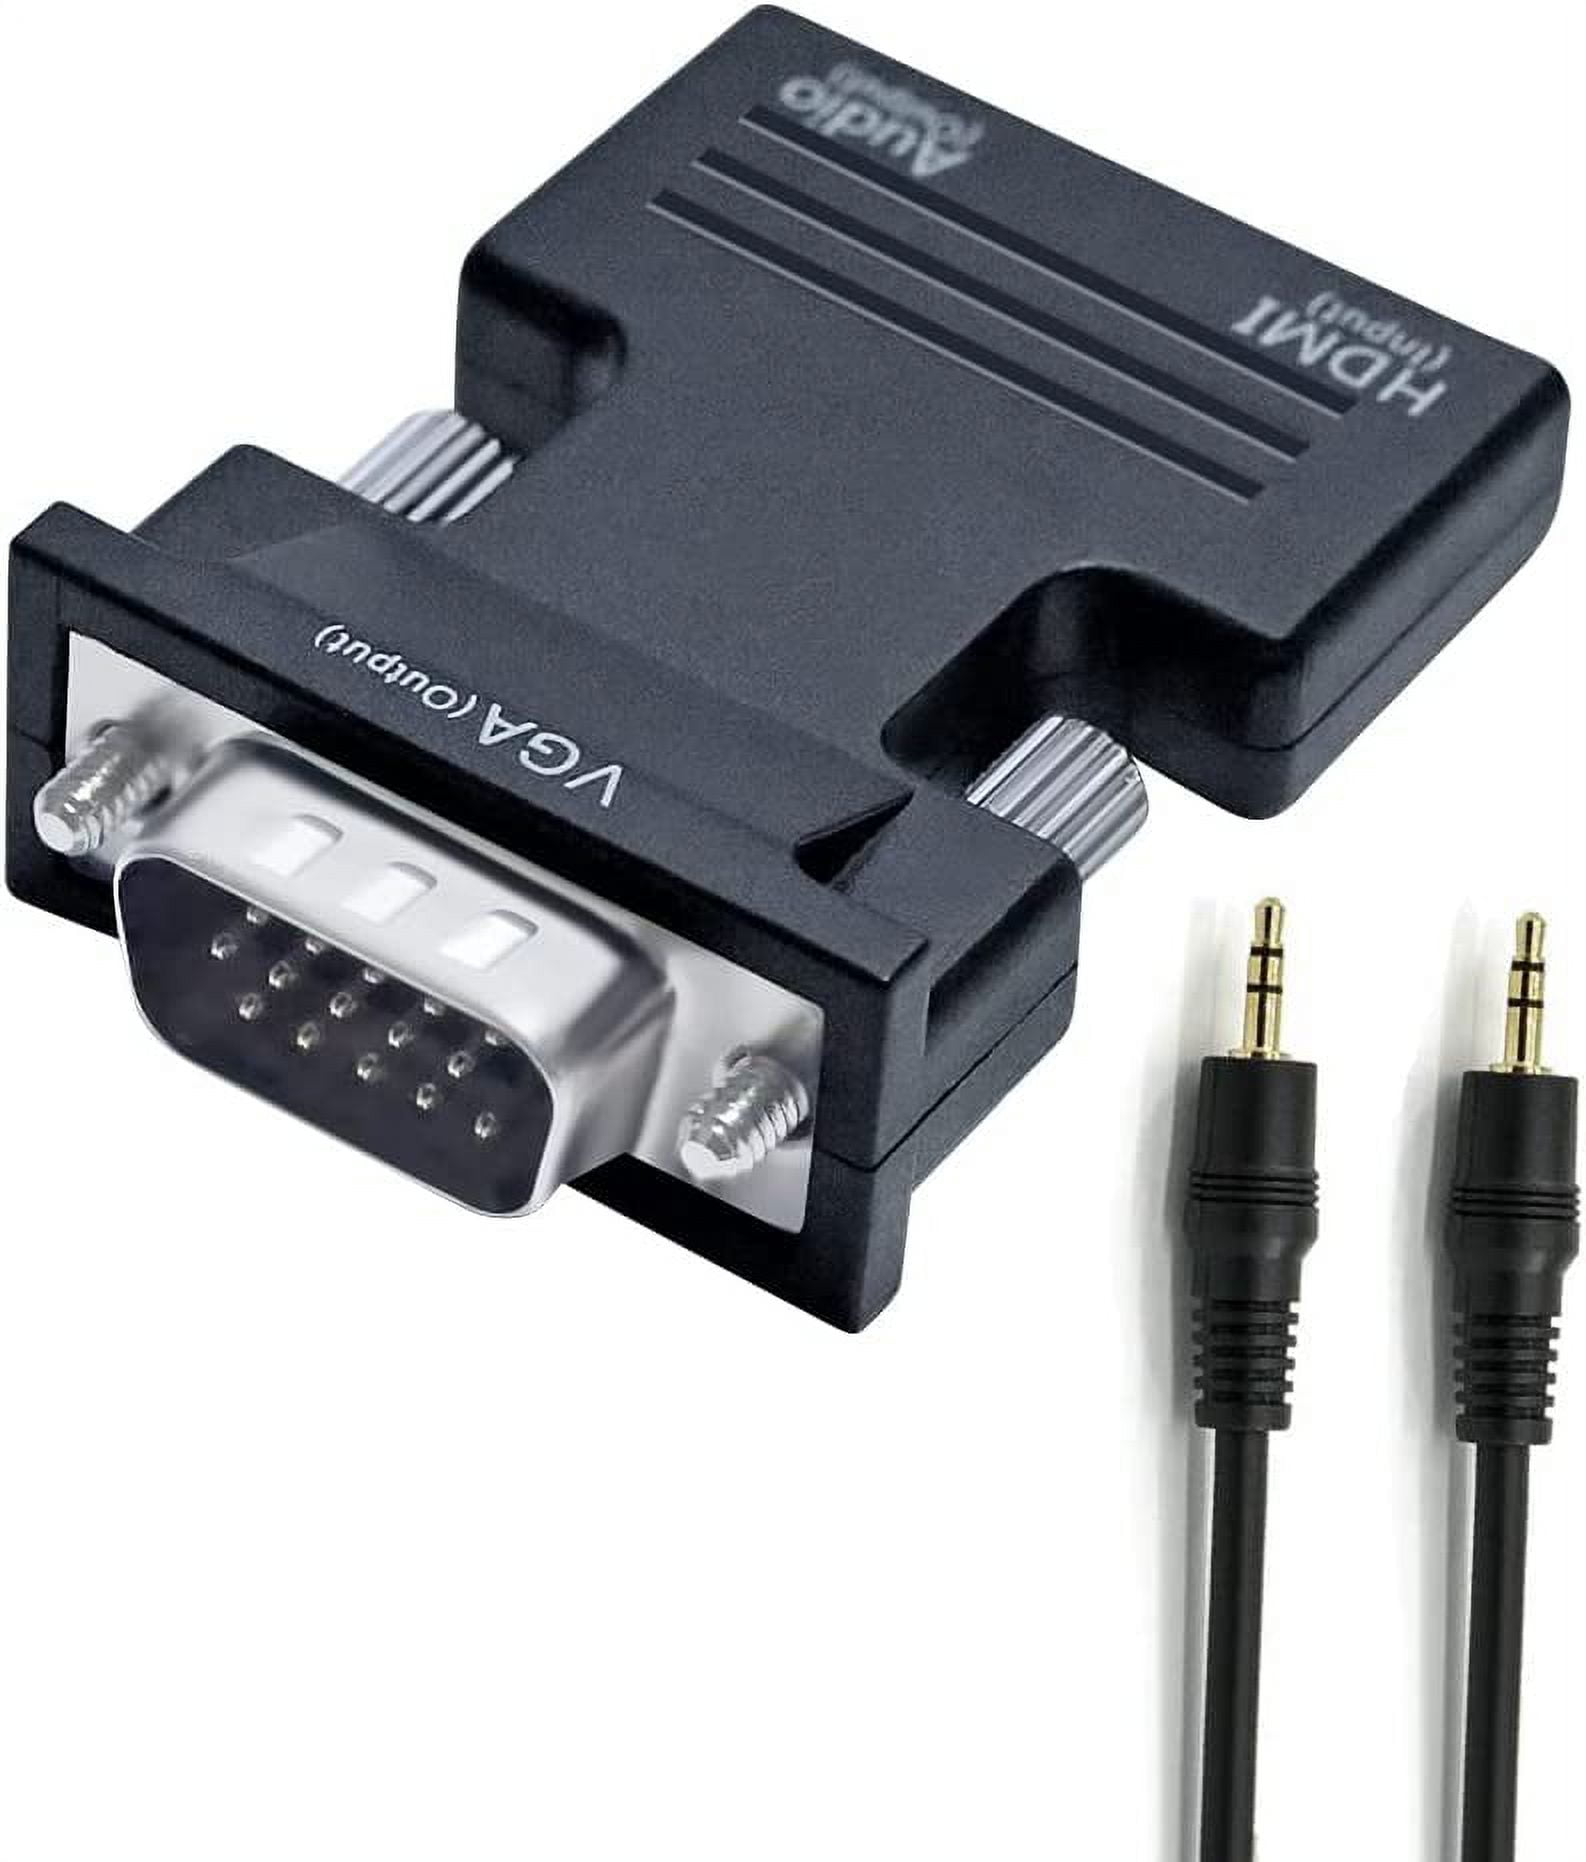 VGA-HDMI Converter – AURGA